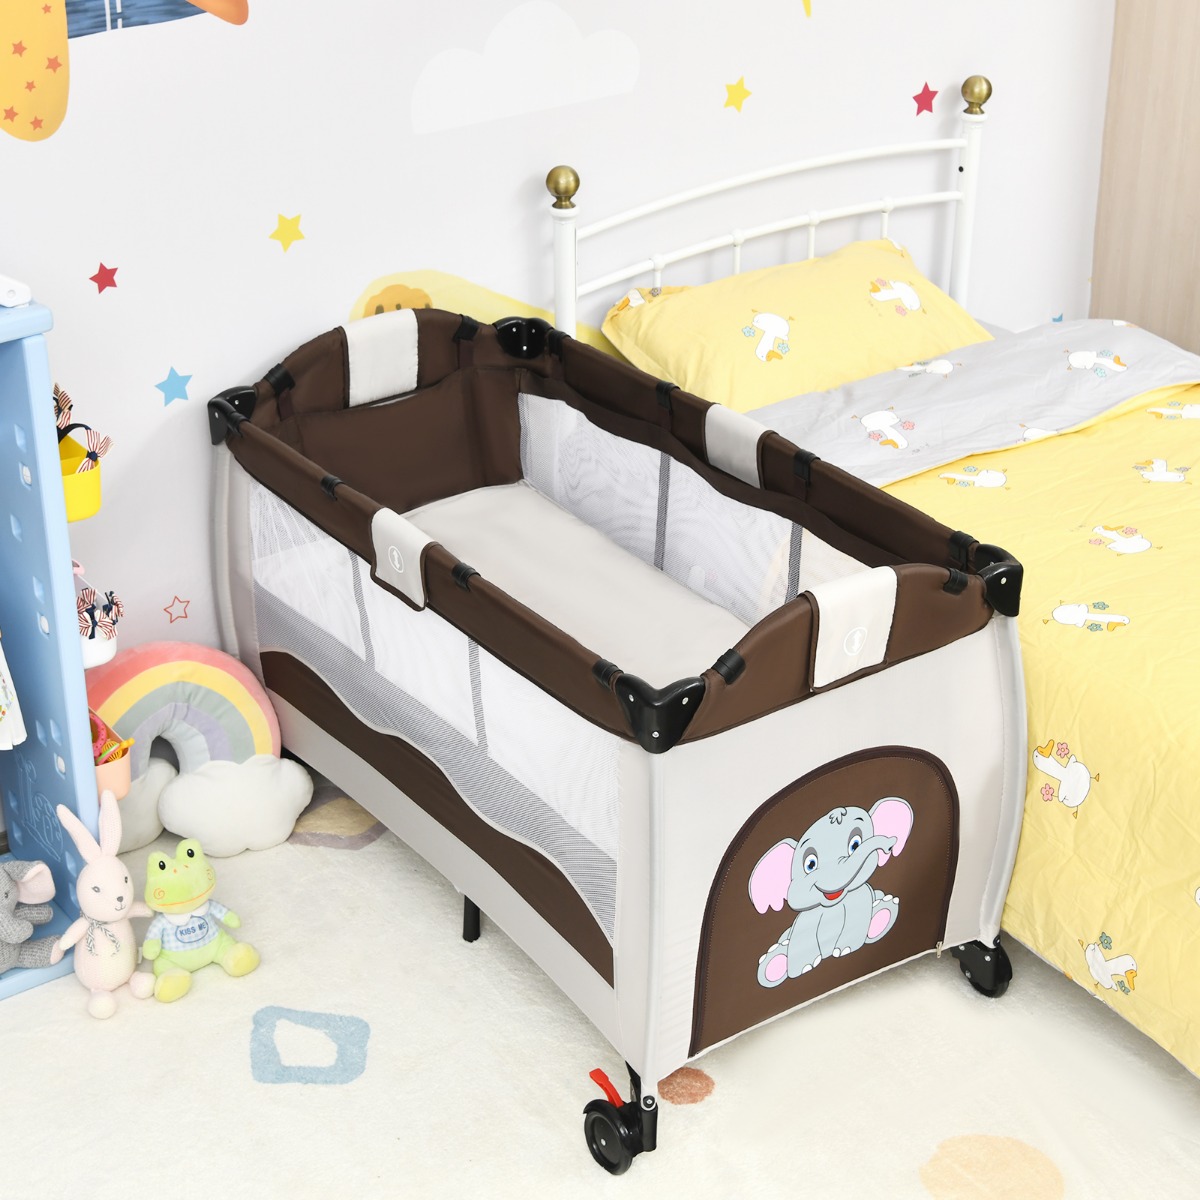 Costway 3-In-1 Baby Speelbed Draagbare Opvouwbare Wieg met Luiertafel Comfortabel Matras Baby Wiegje Bed met Speelgoed (Bruin)